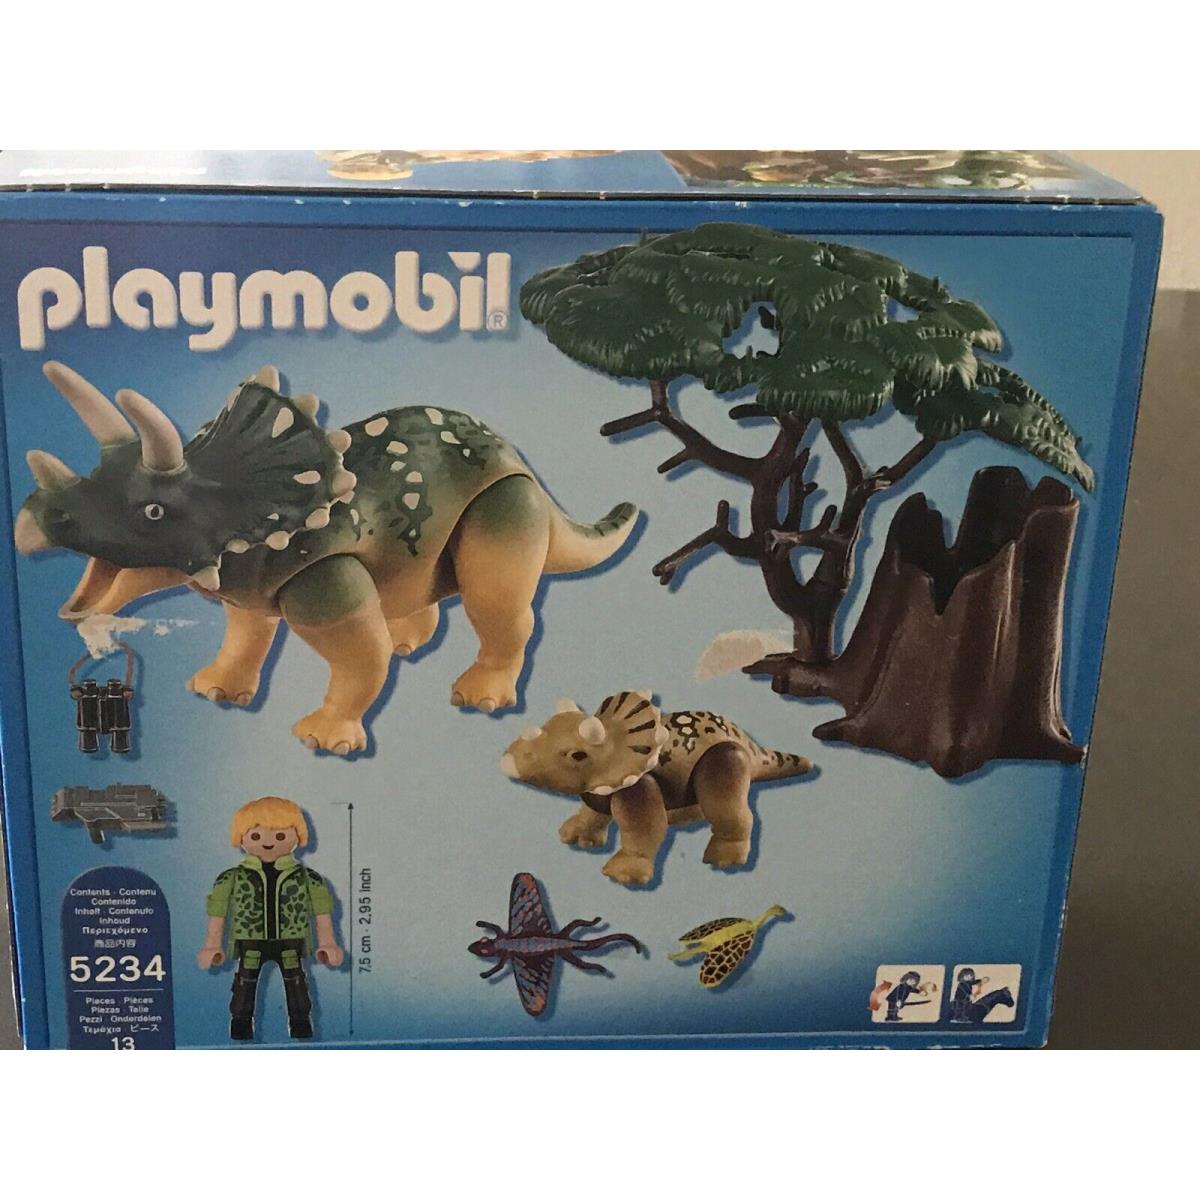 Playmobil Dinos Green Triceratops Dinosaur Jurassic Set 5234